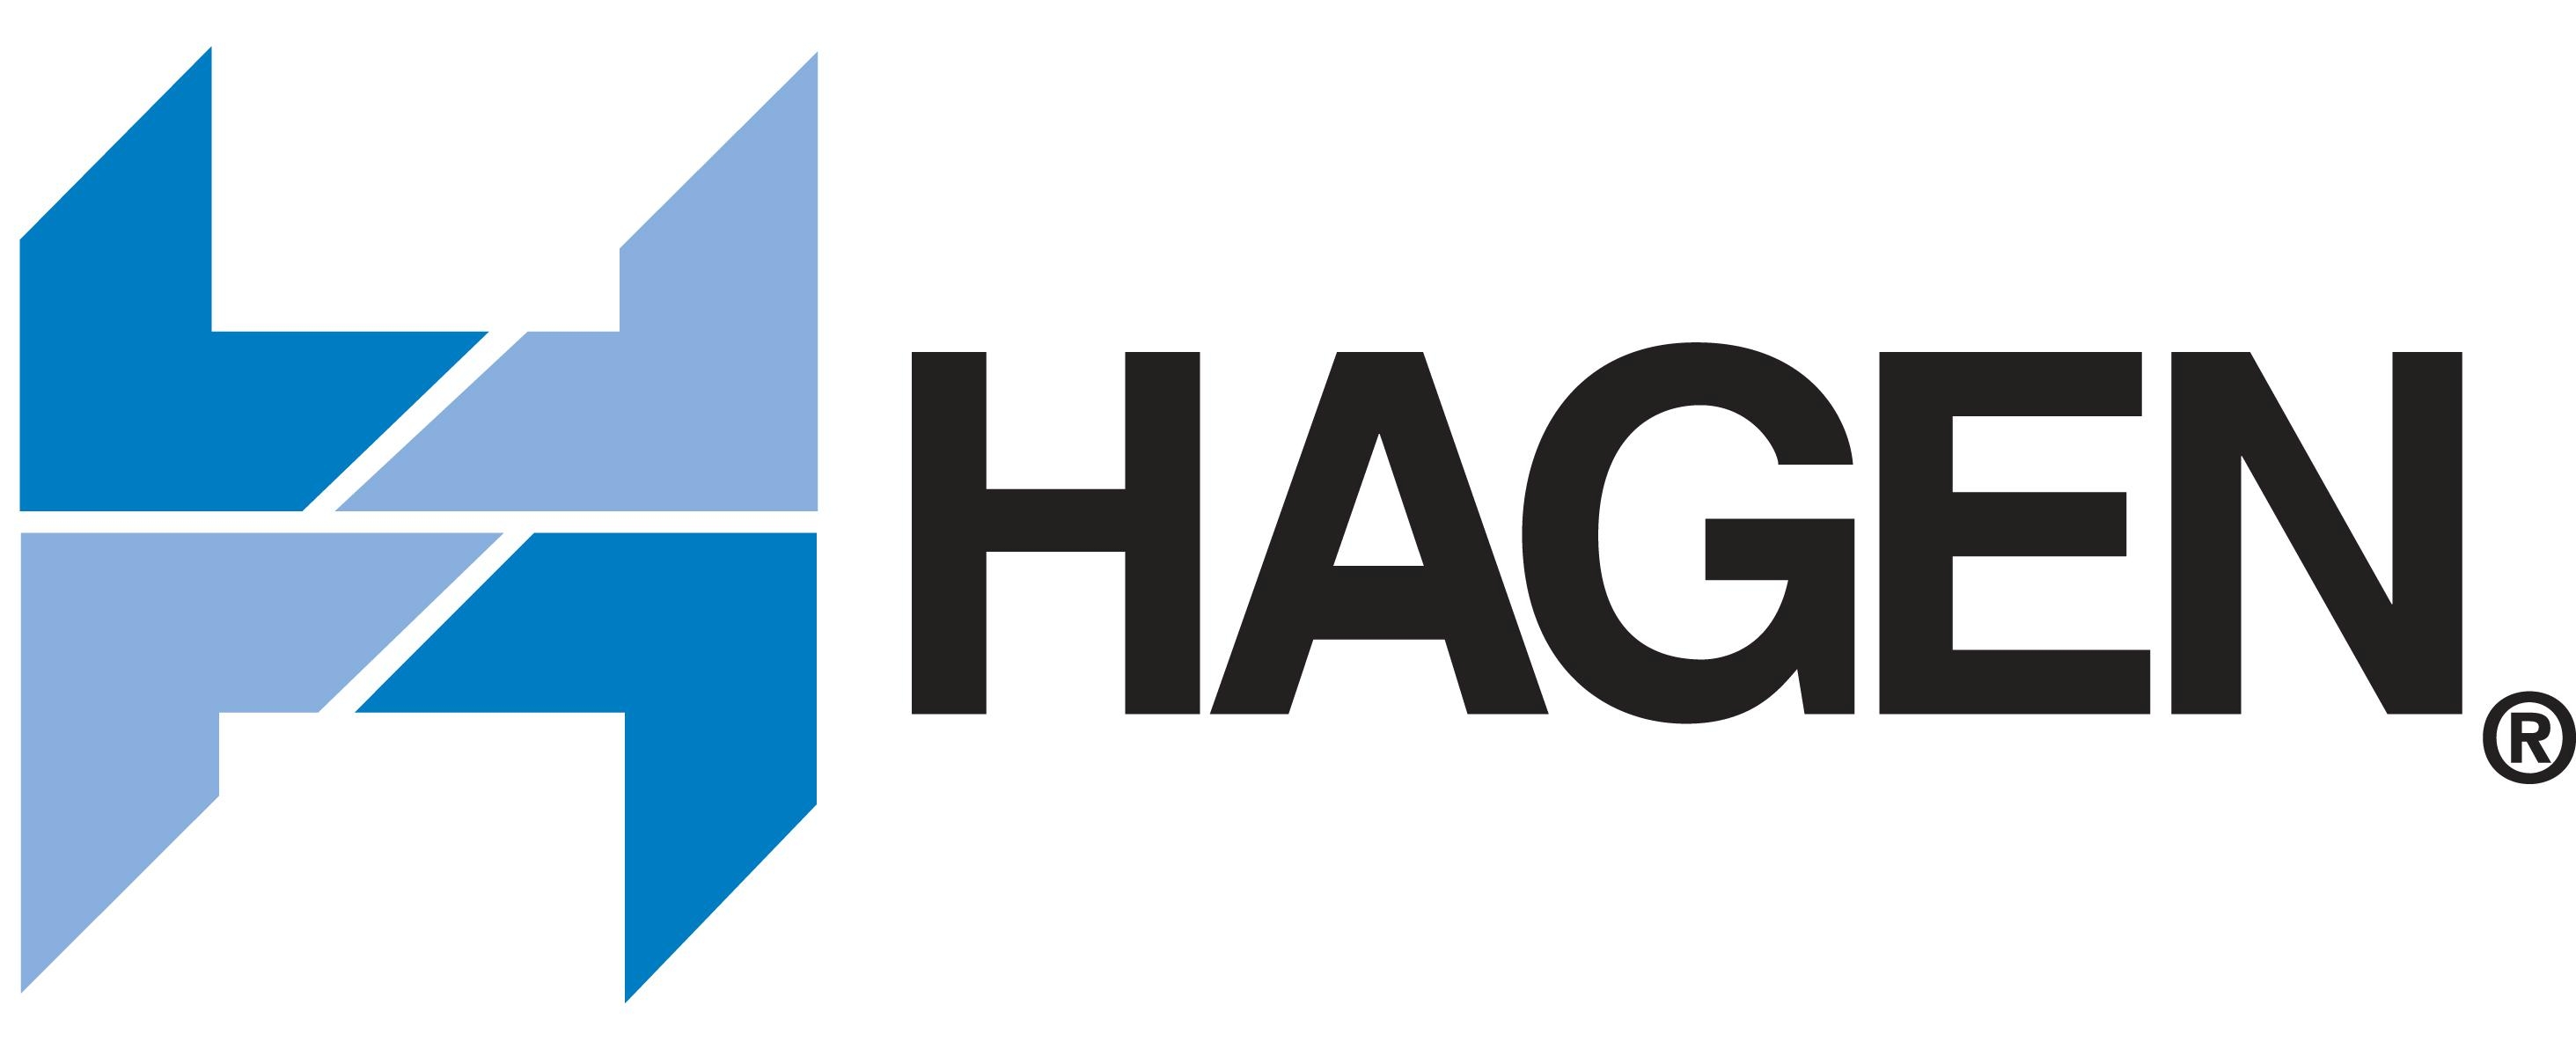 hagen_logo.jpg